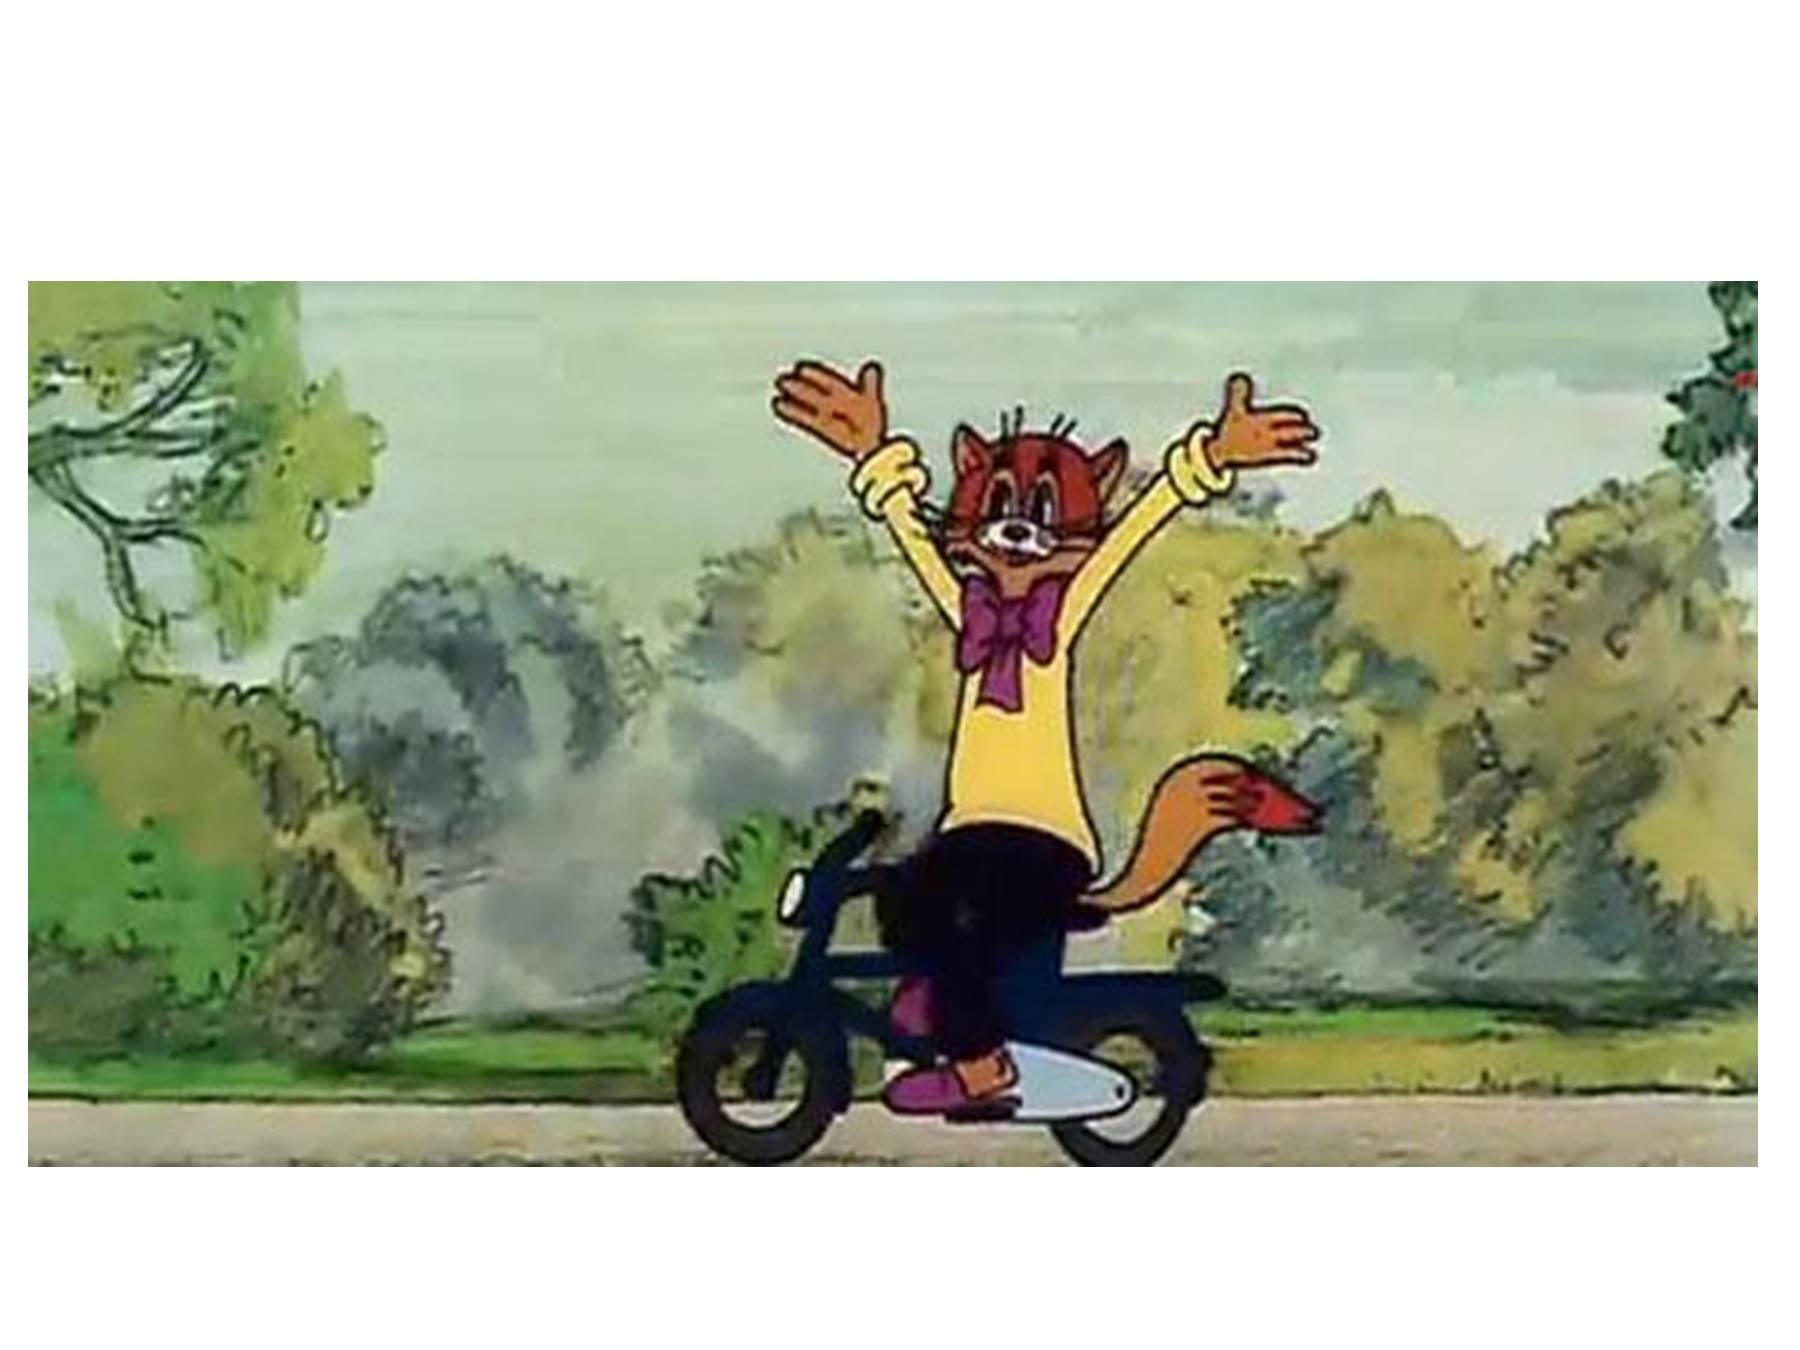 Велосипед кота Леопольда